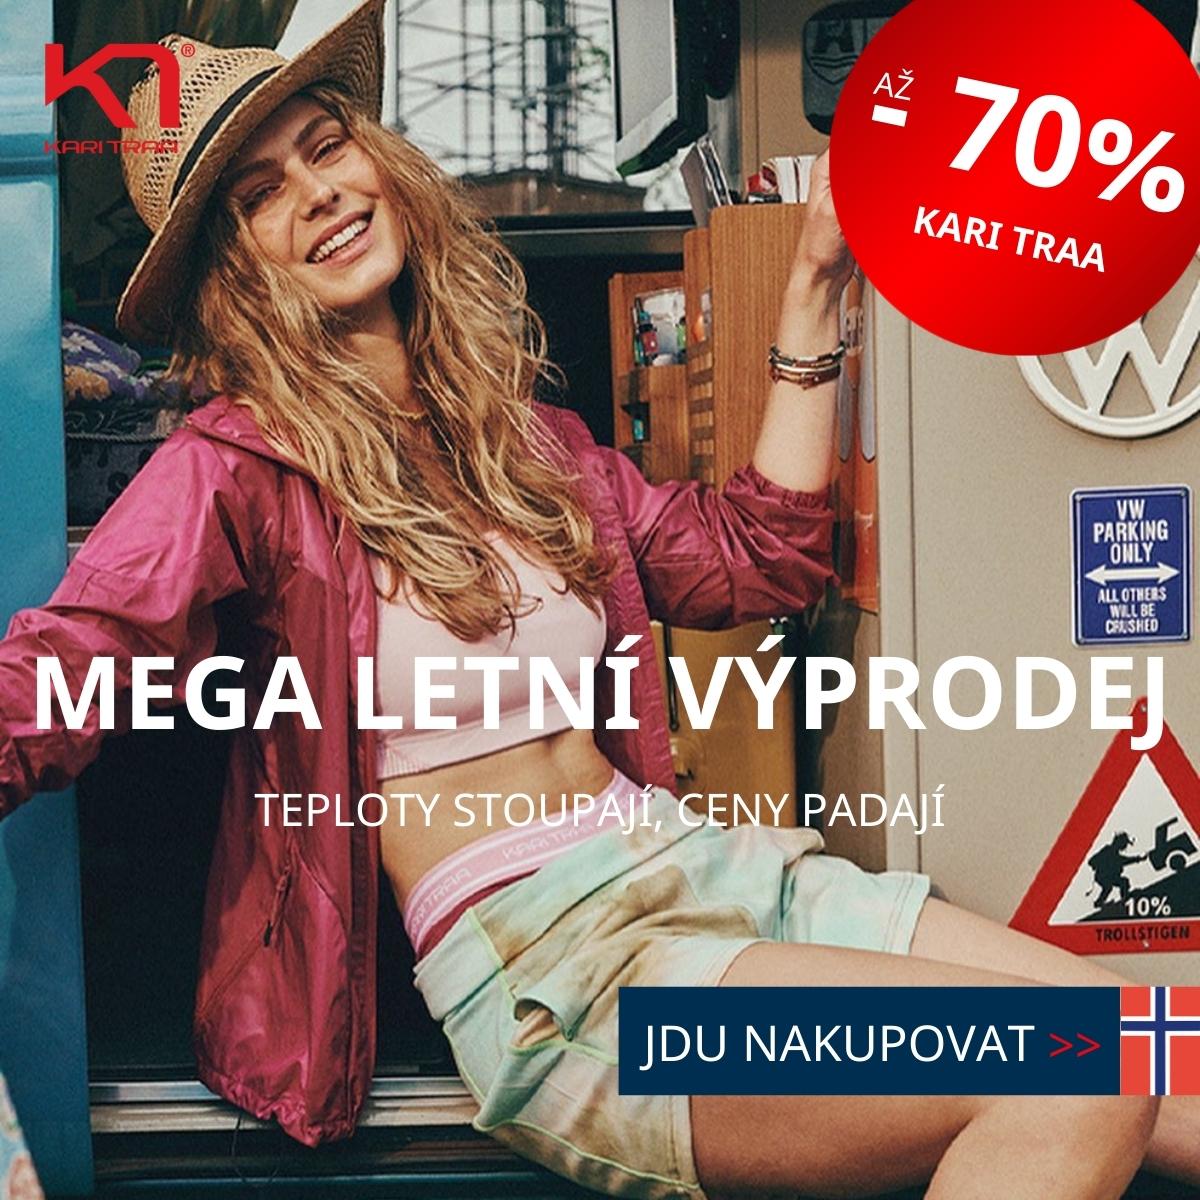 Letní výprodej Kari Traa - slevy až - 70 %